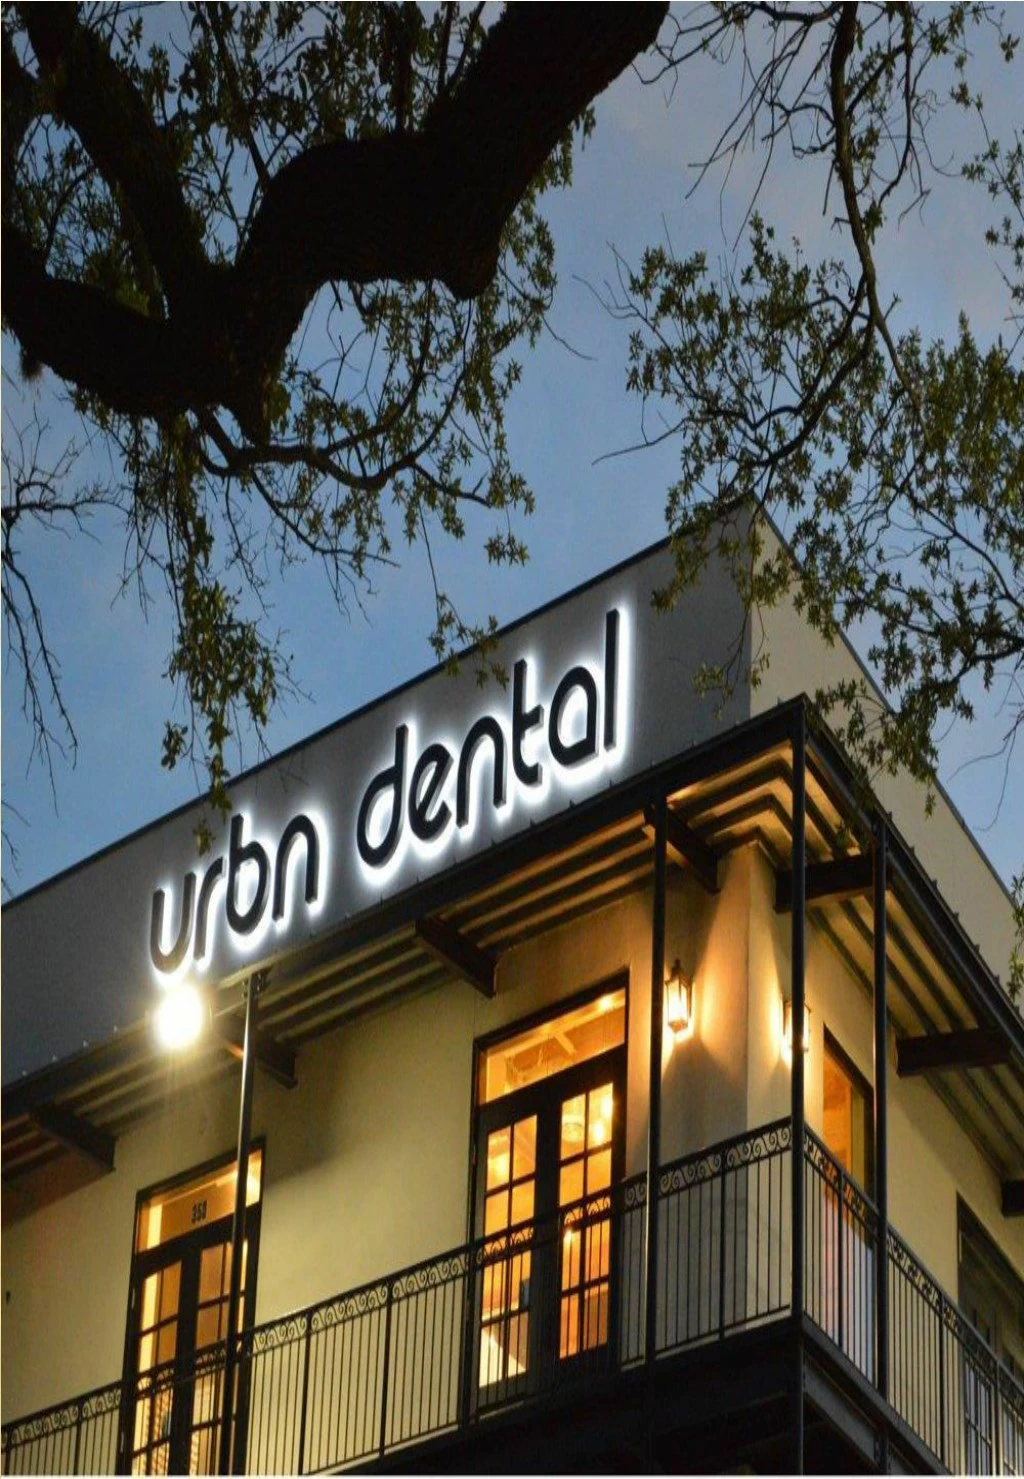 urbn dental uptown